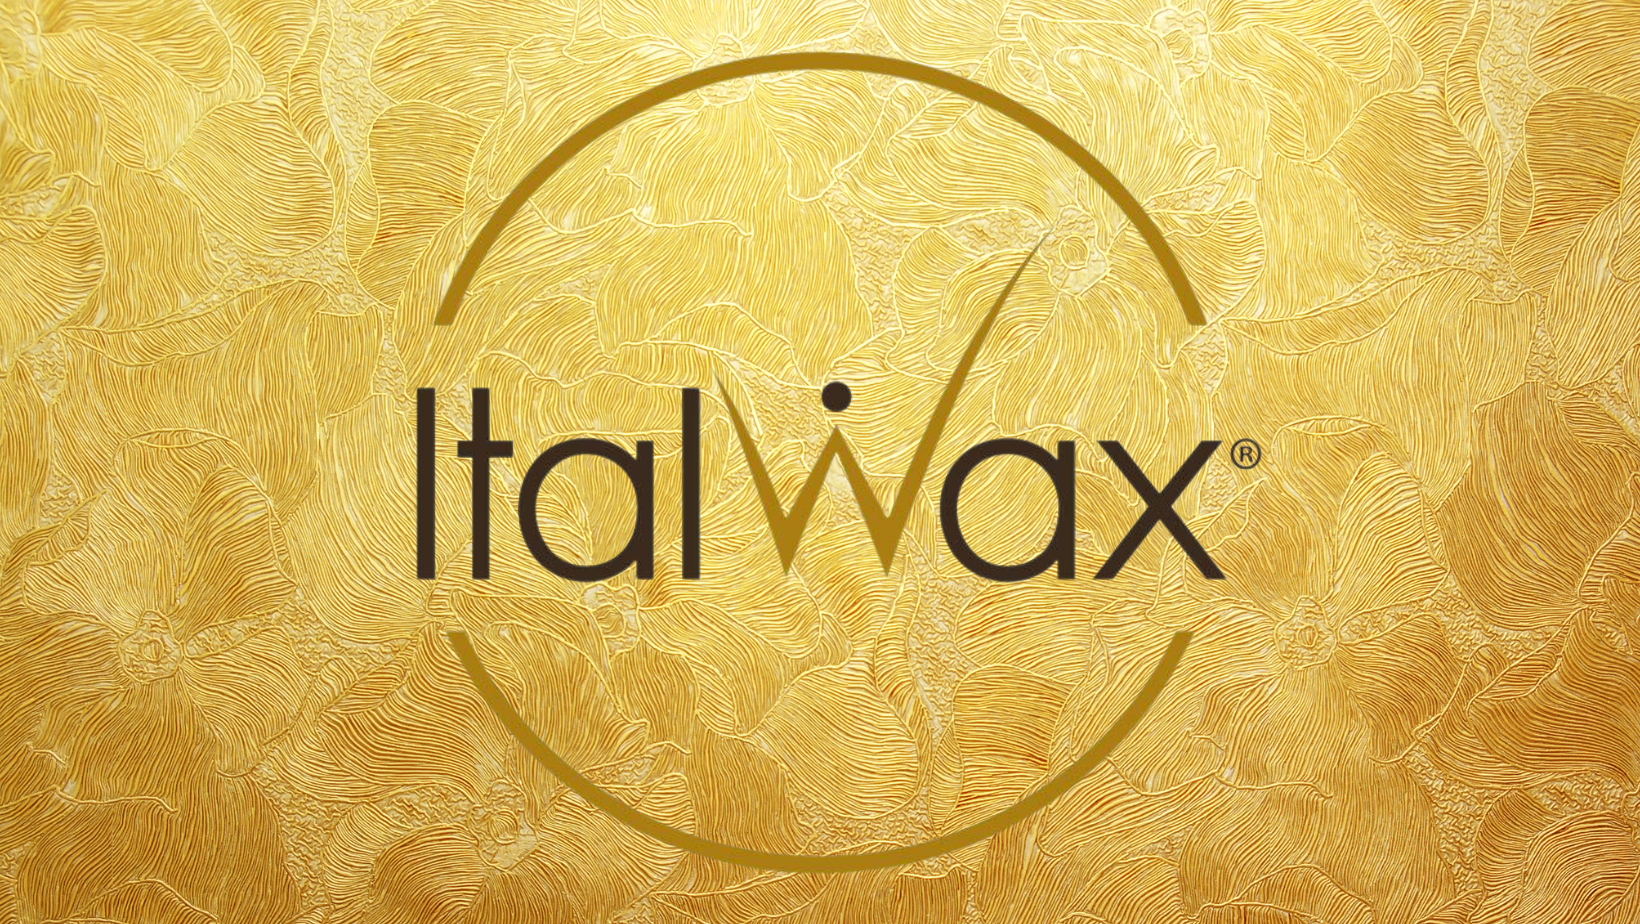 ITALWAX? THE BEST WAX